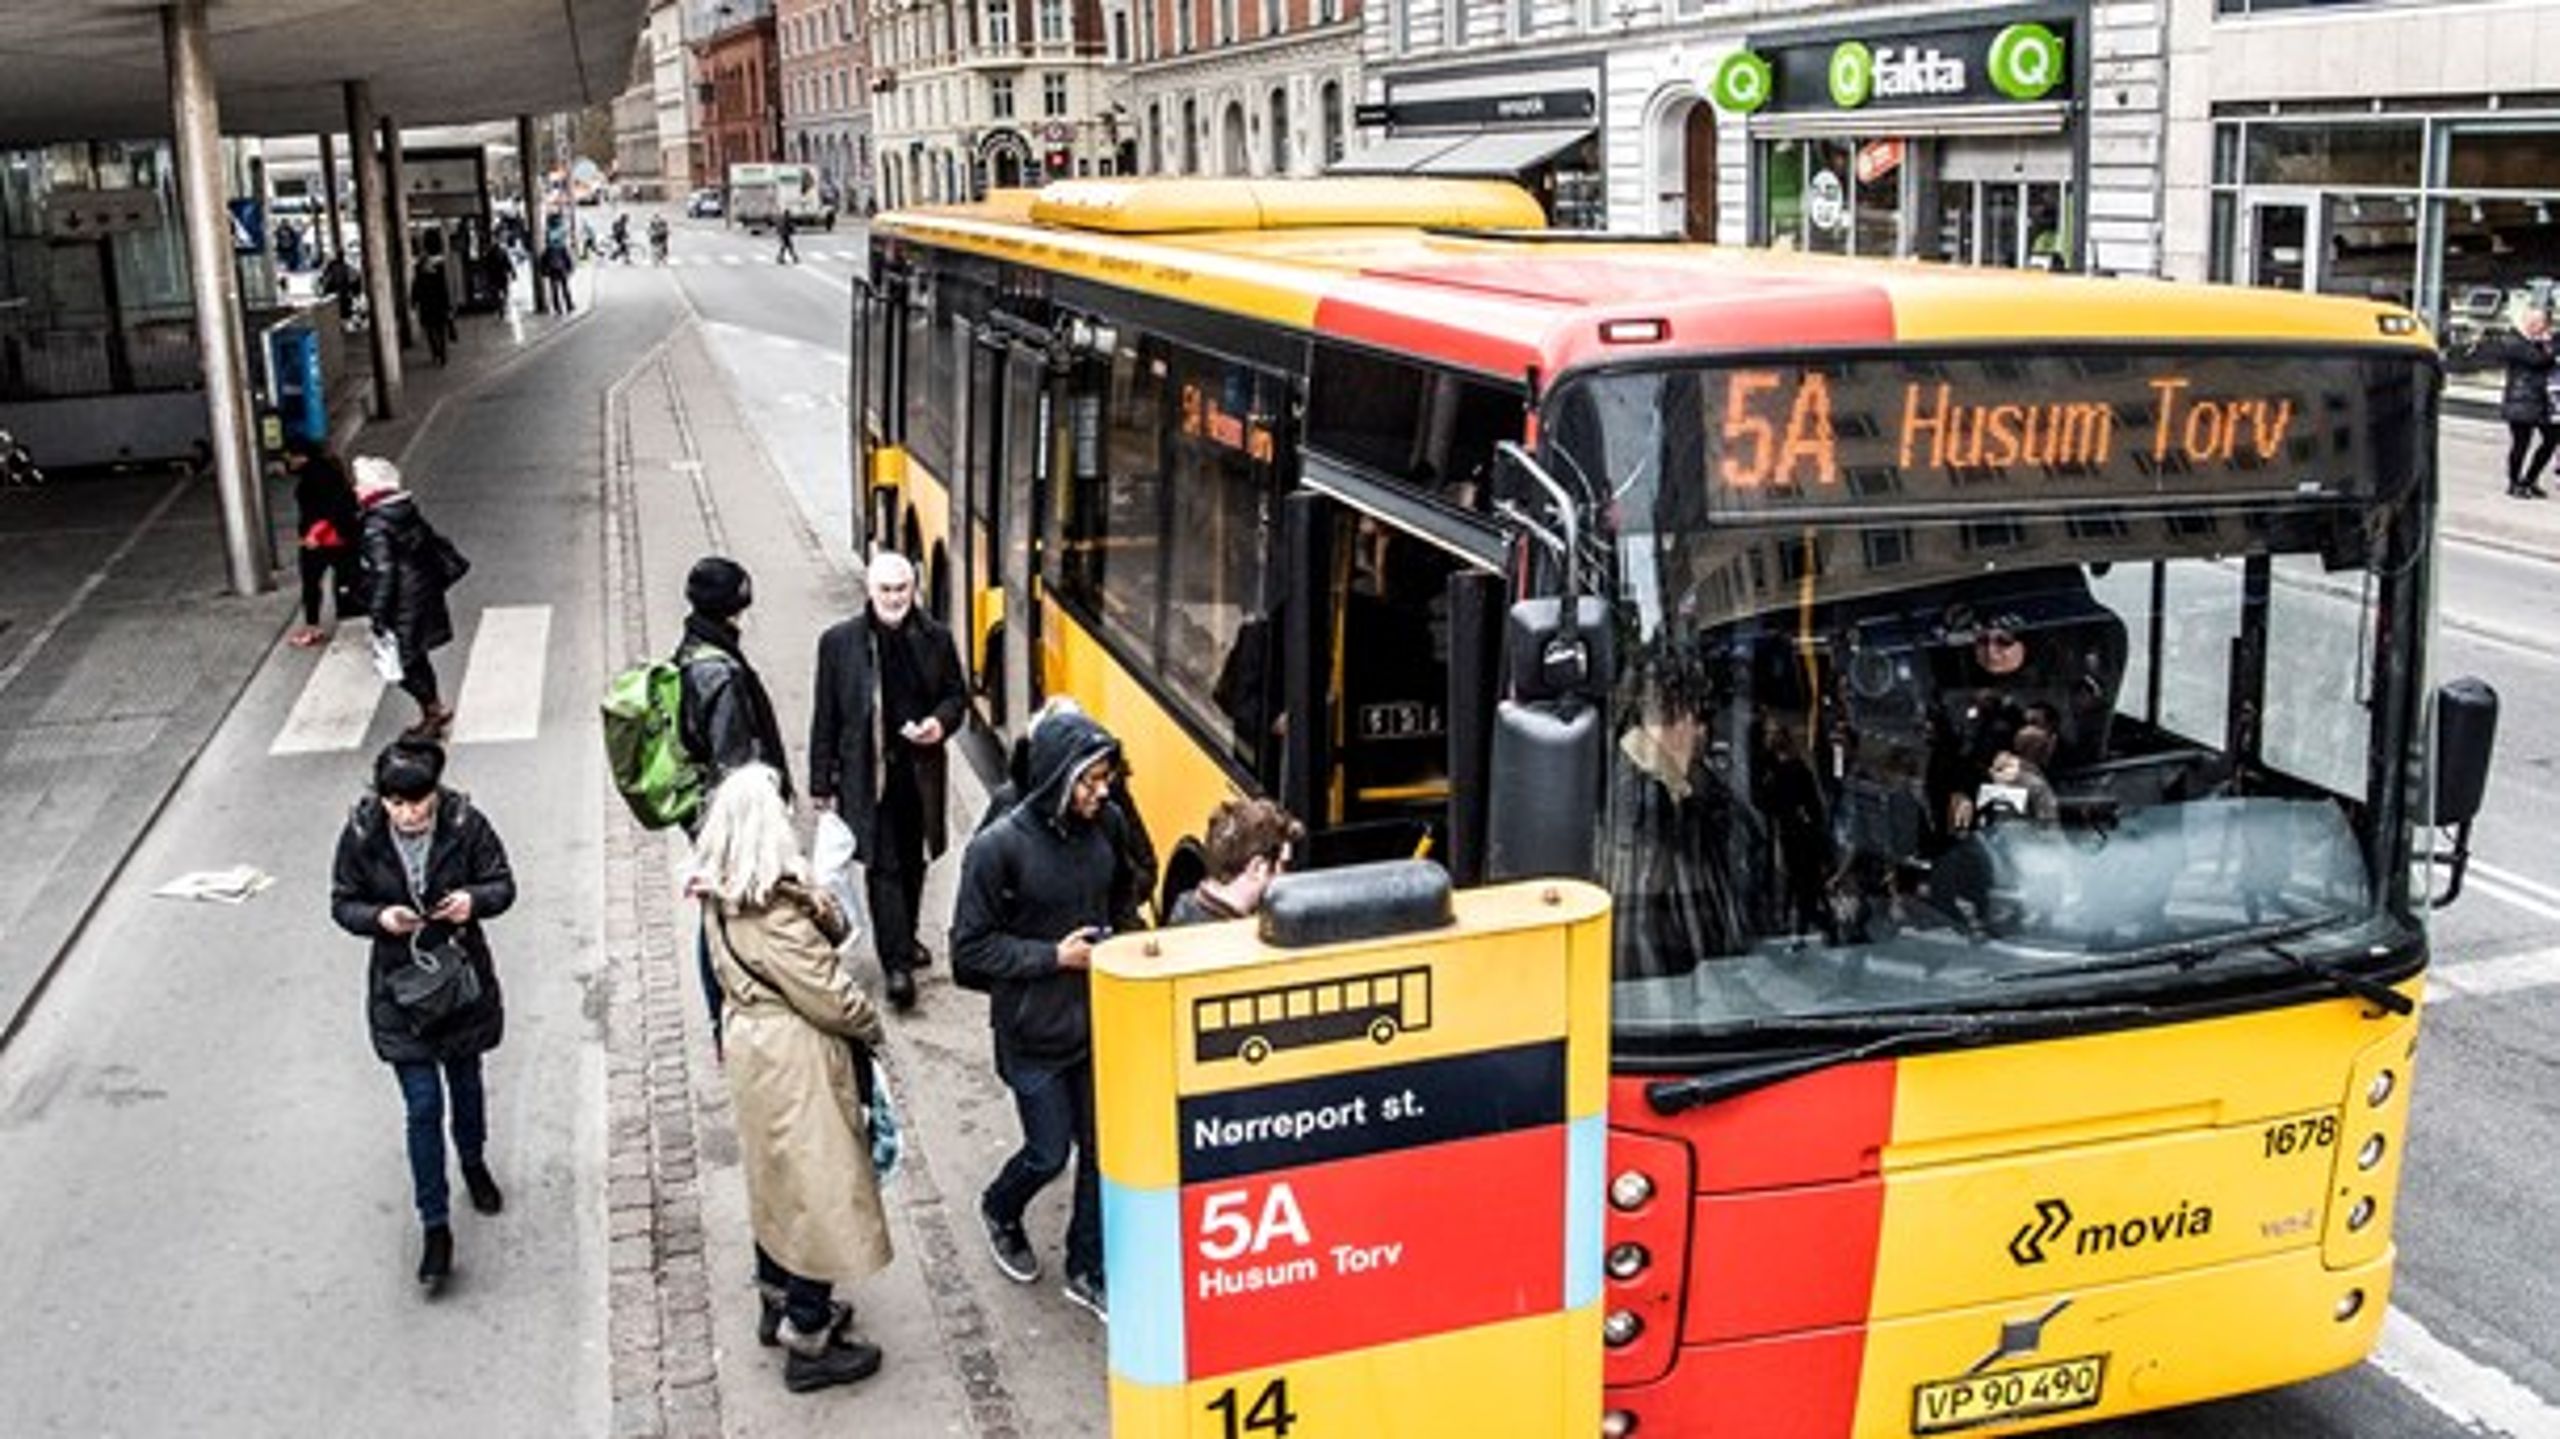 Etablering af en letbane i Aarhus har fået Region Midtjylland til beskære busruterne i regionen for at kunne finansiere udgifter til letbanen. Men det er en fejl at svække den kollektive trafik, mener 3F og DI.